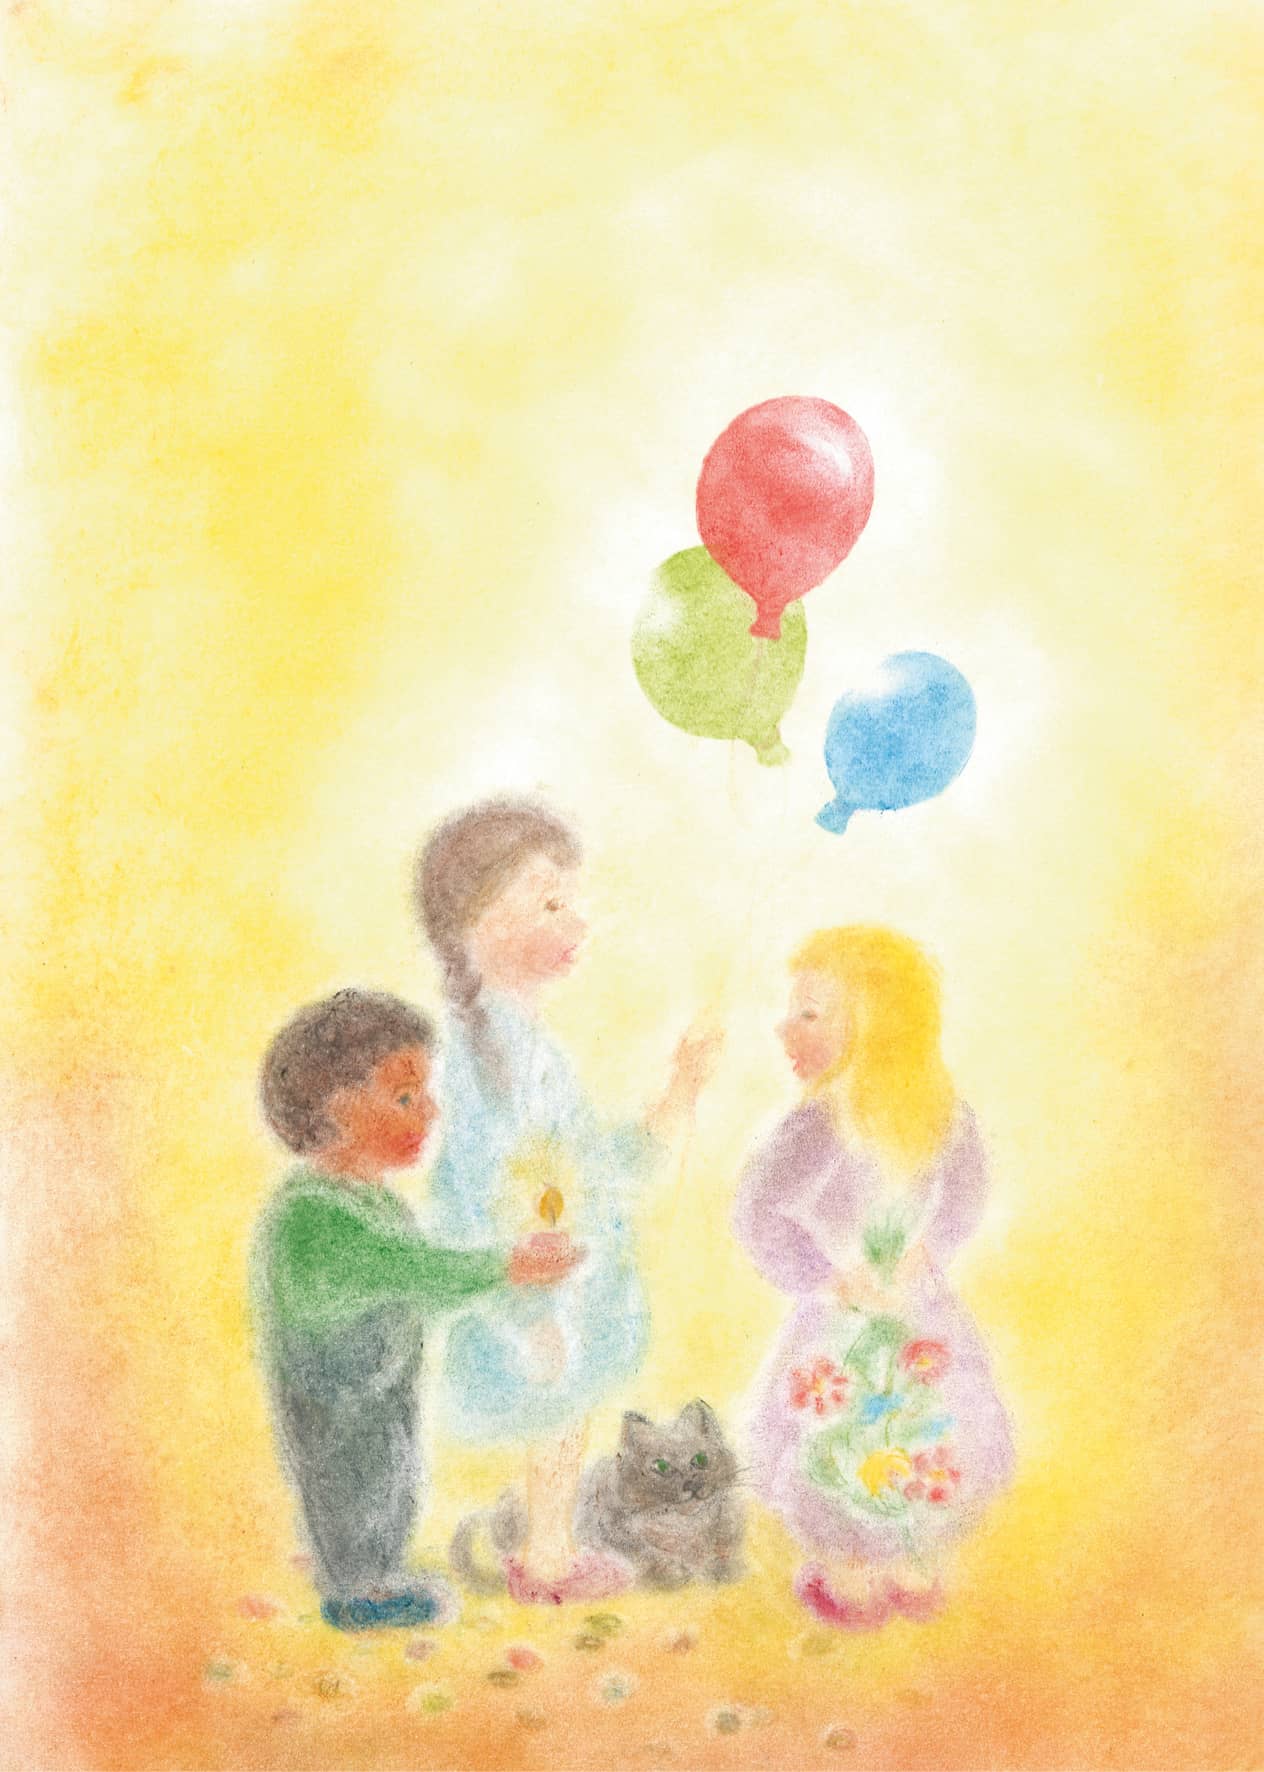 Seccorell-Postkarte "Geburtstag" mit fröhlichen Kindern, einer Katze, bunten Ballons und einem Hauch von Magie.